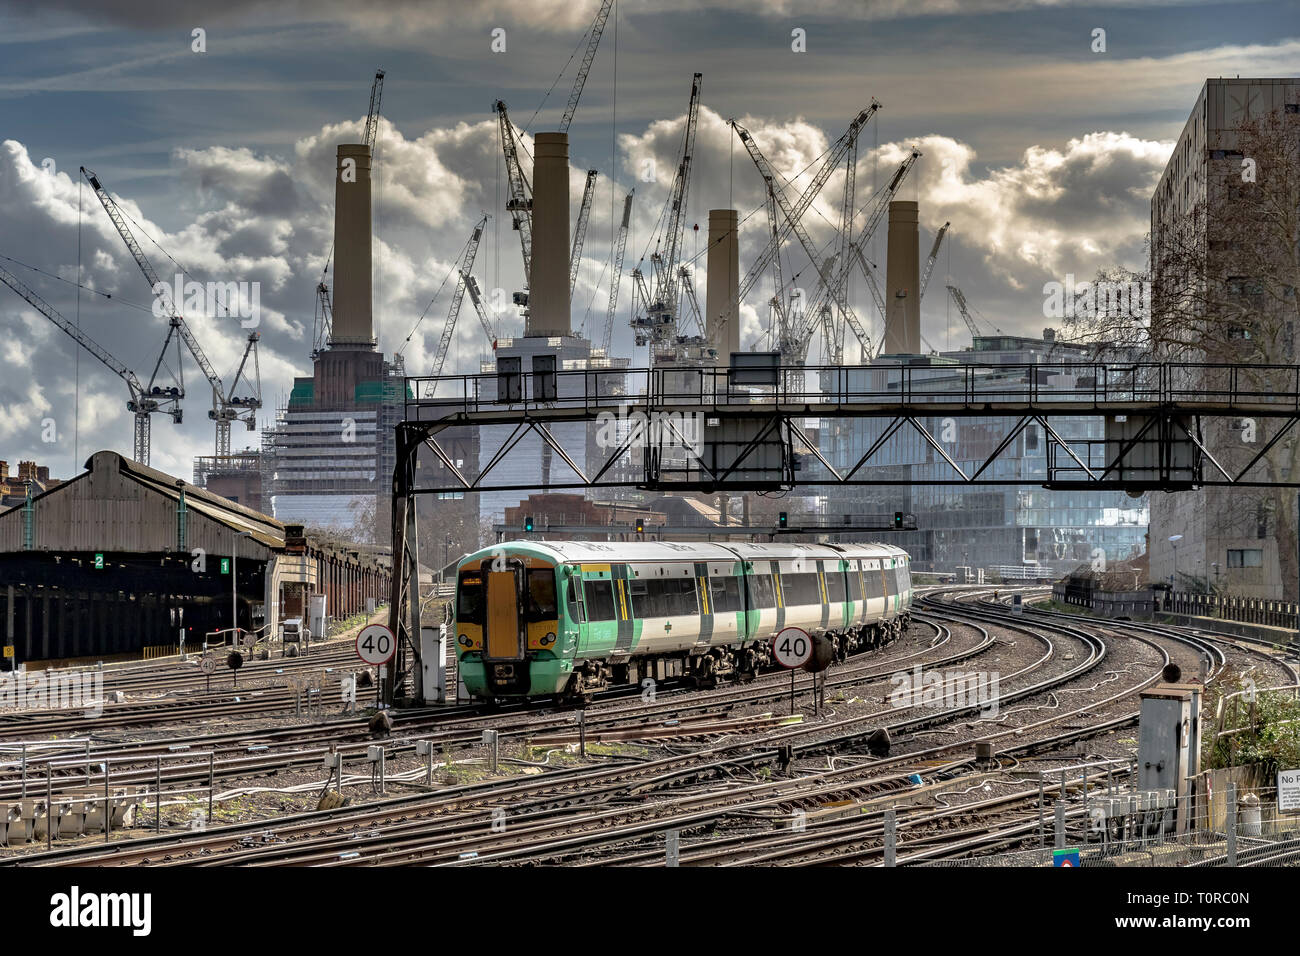 Un train Southern Rail approchant Ebury Bridge sur l'approche finale de la gare Victoria, avec Battersea Power Station dans la distance, Londres, Royaume-Uni Banque D'Images